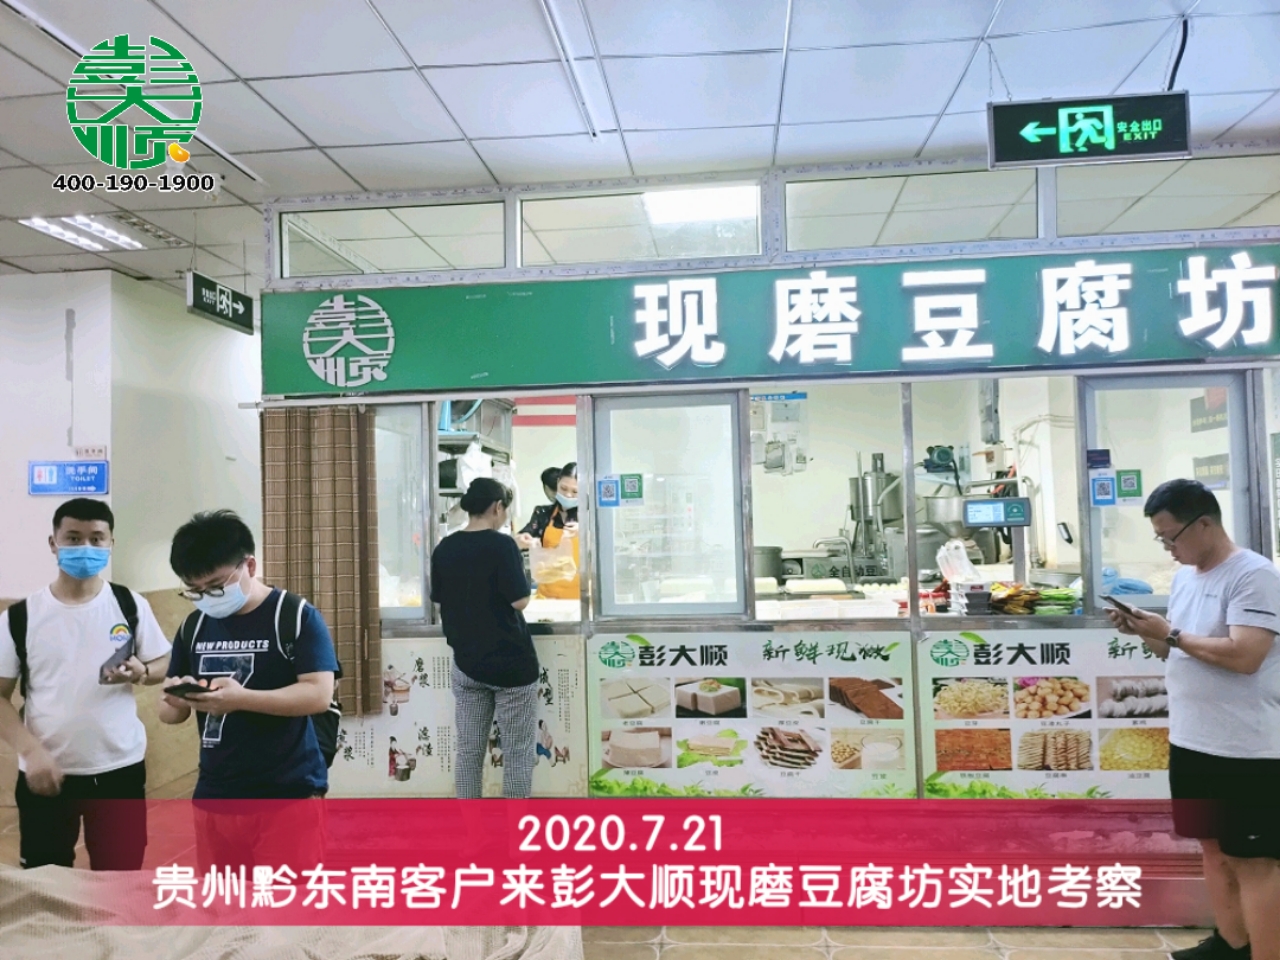 石老板购买彭大顺全自动豆腐机轻松经营豆制品生意